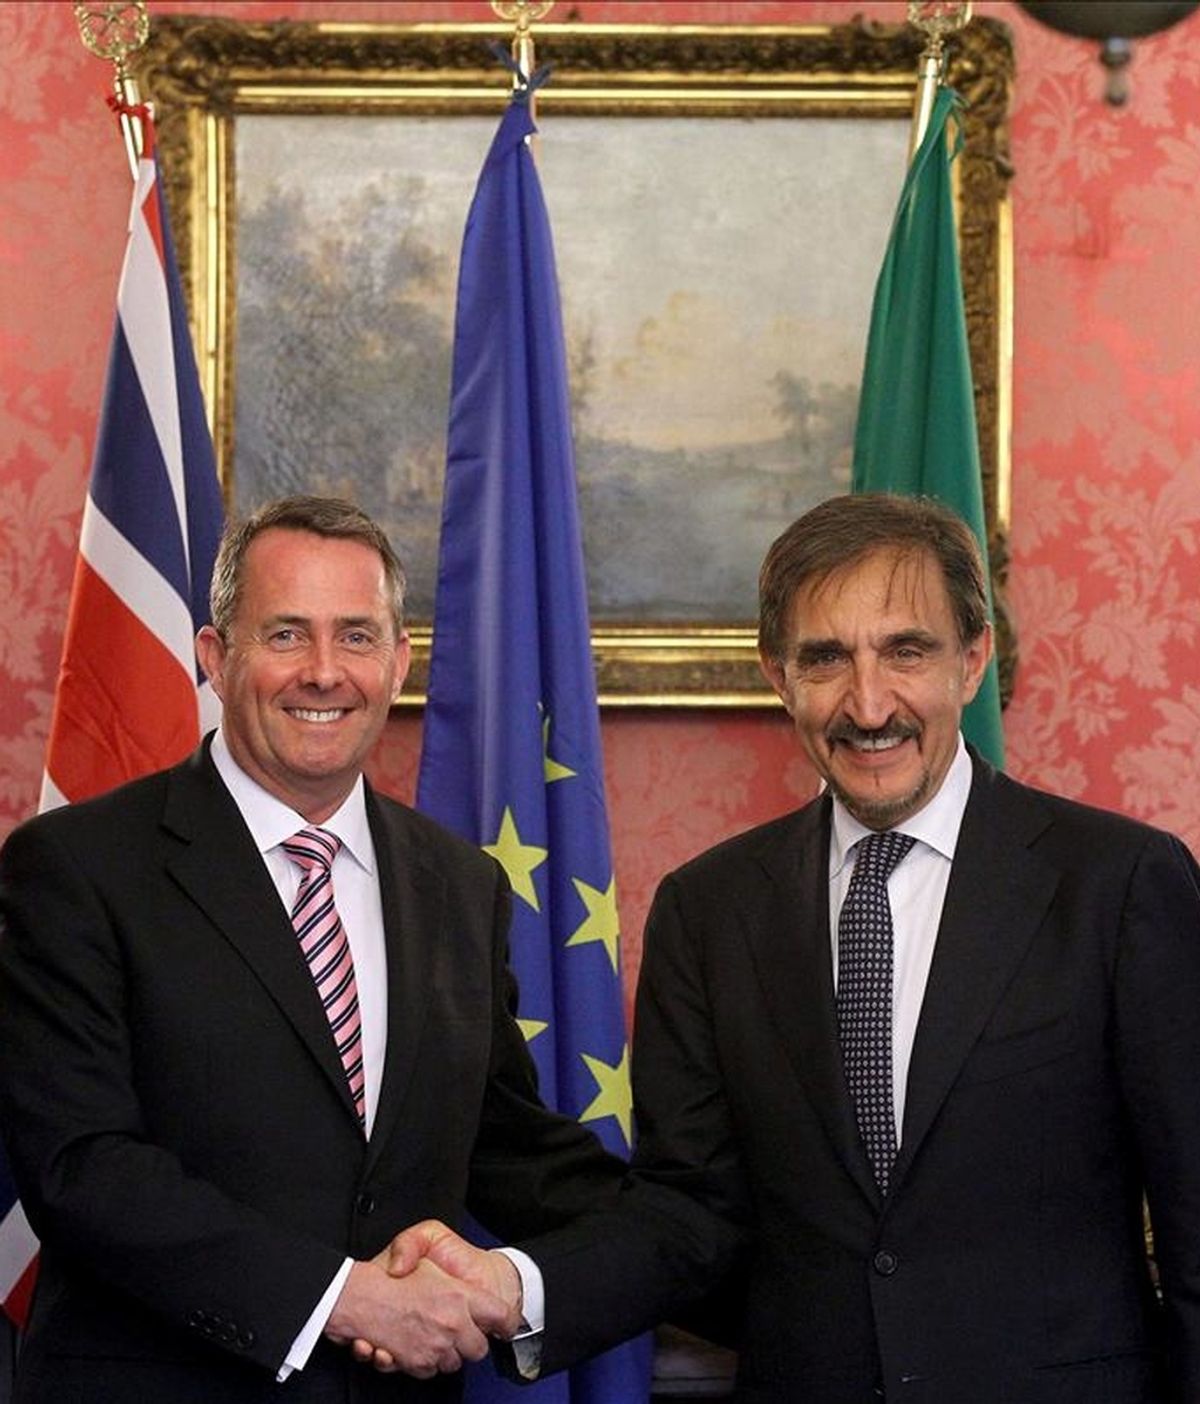 El ministro británico de Defensa, Liam Fox, (i), y su homólogo italiano Ignazio La Russa (d) posan para los medios al término del encuentro que han mantenido en Roma, Italia. EFE